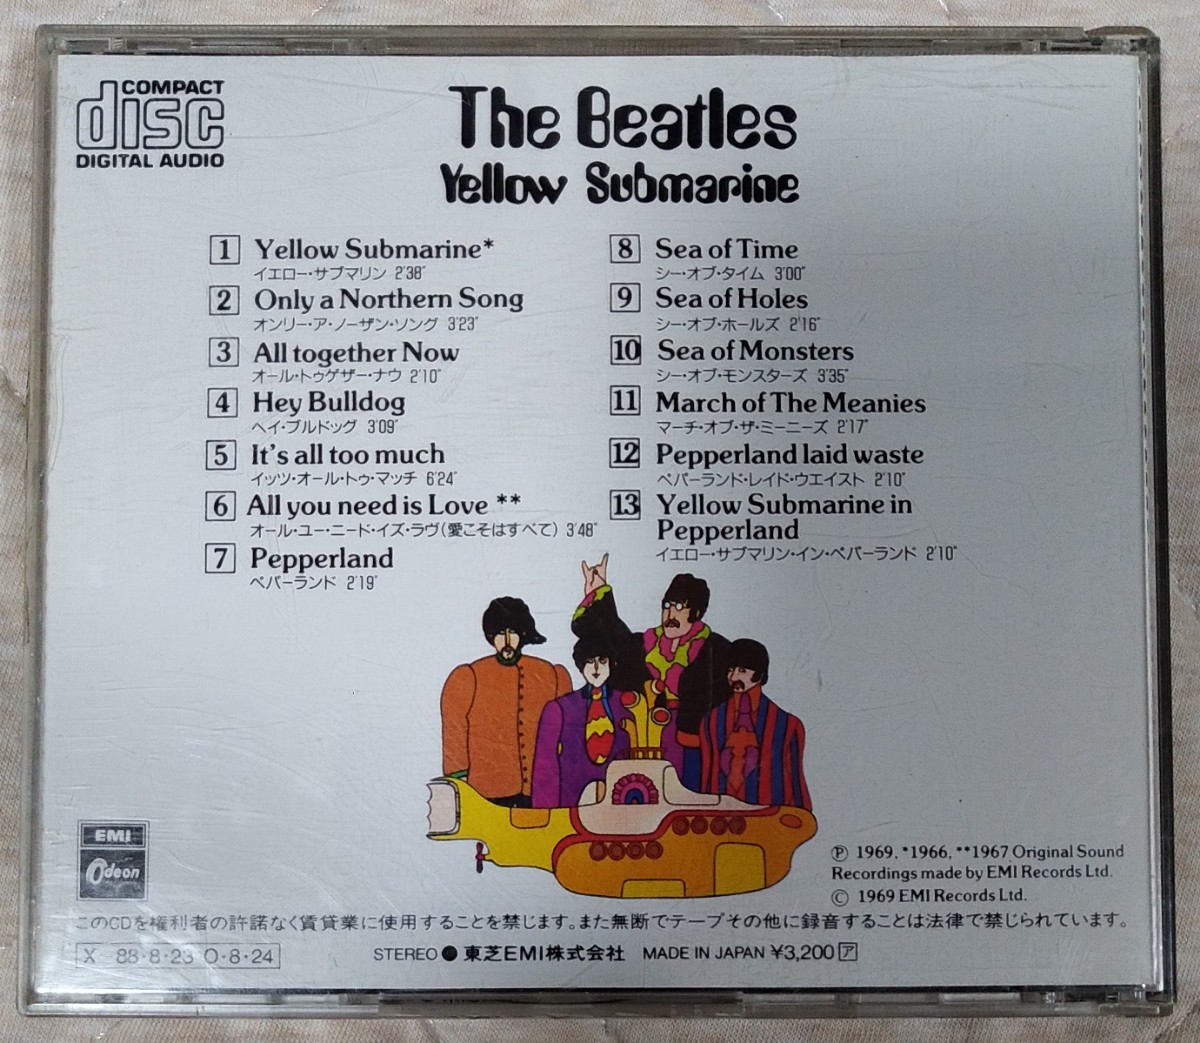 ザ・ビートルズ イエロー・サブマリン 旧規格国内盤中古CD The Beatles Yellow Submarine ジョン・レノン CP32-5325 3200円盤_画像2